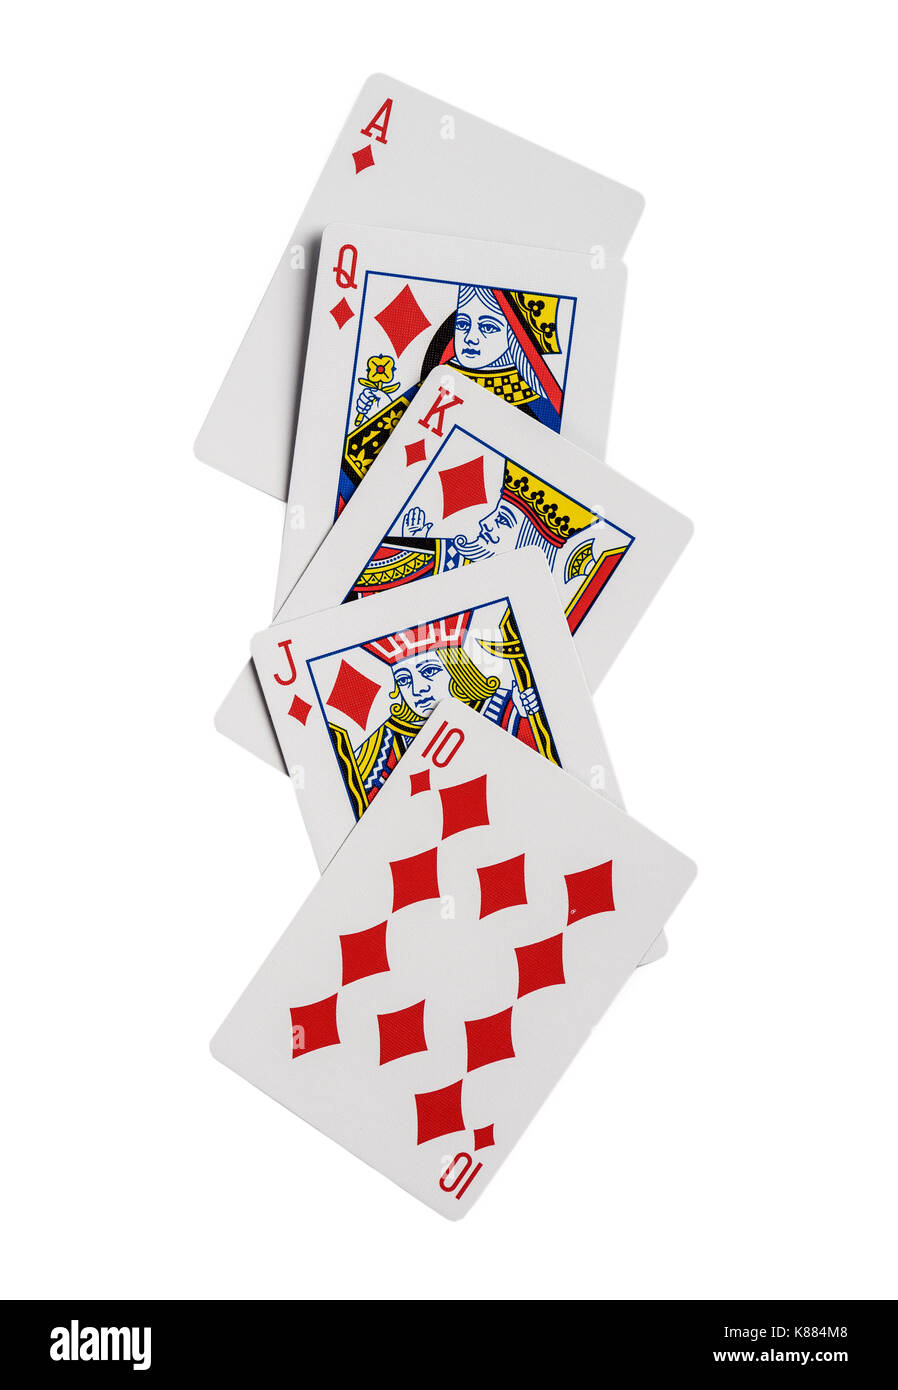 Combinaison de cartes à jouer poker casino costume diamants. isolé sur fond blanc Banque D'Images